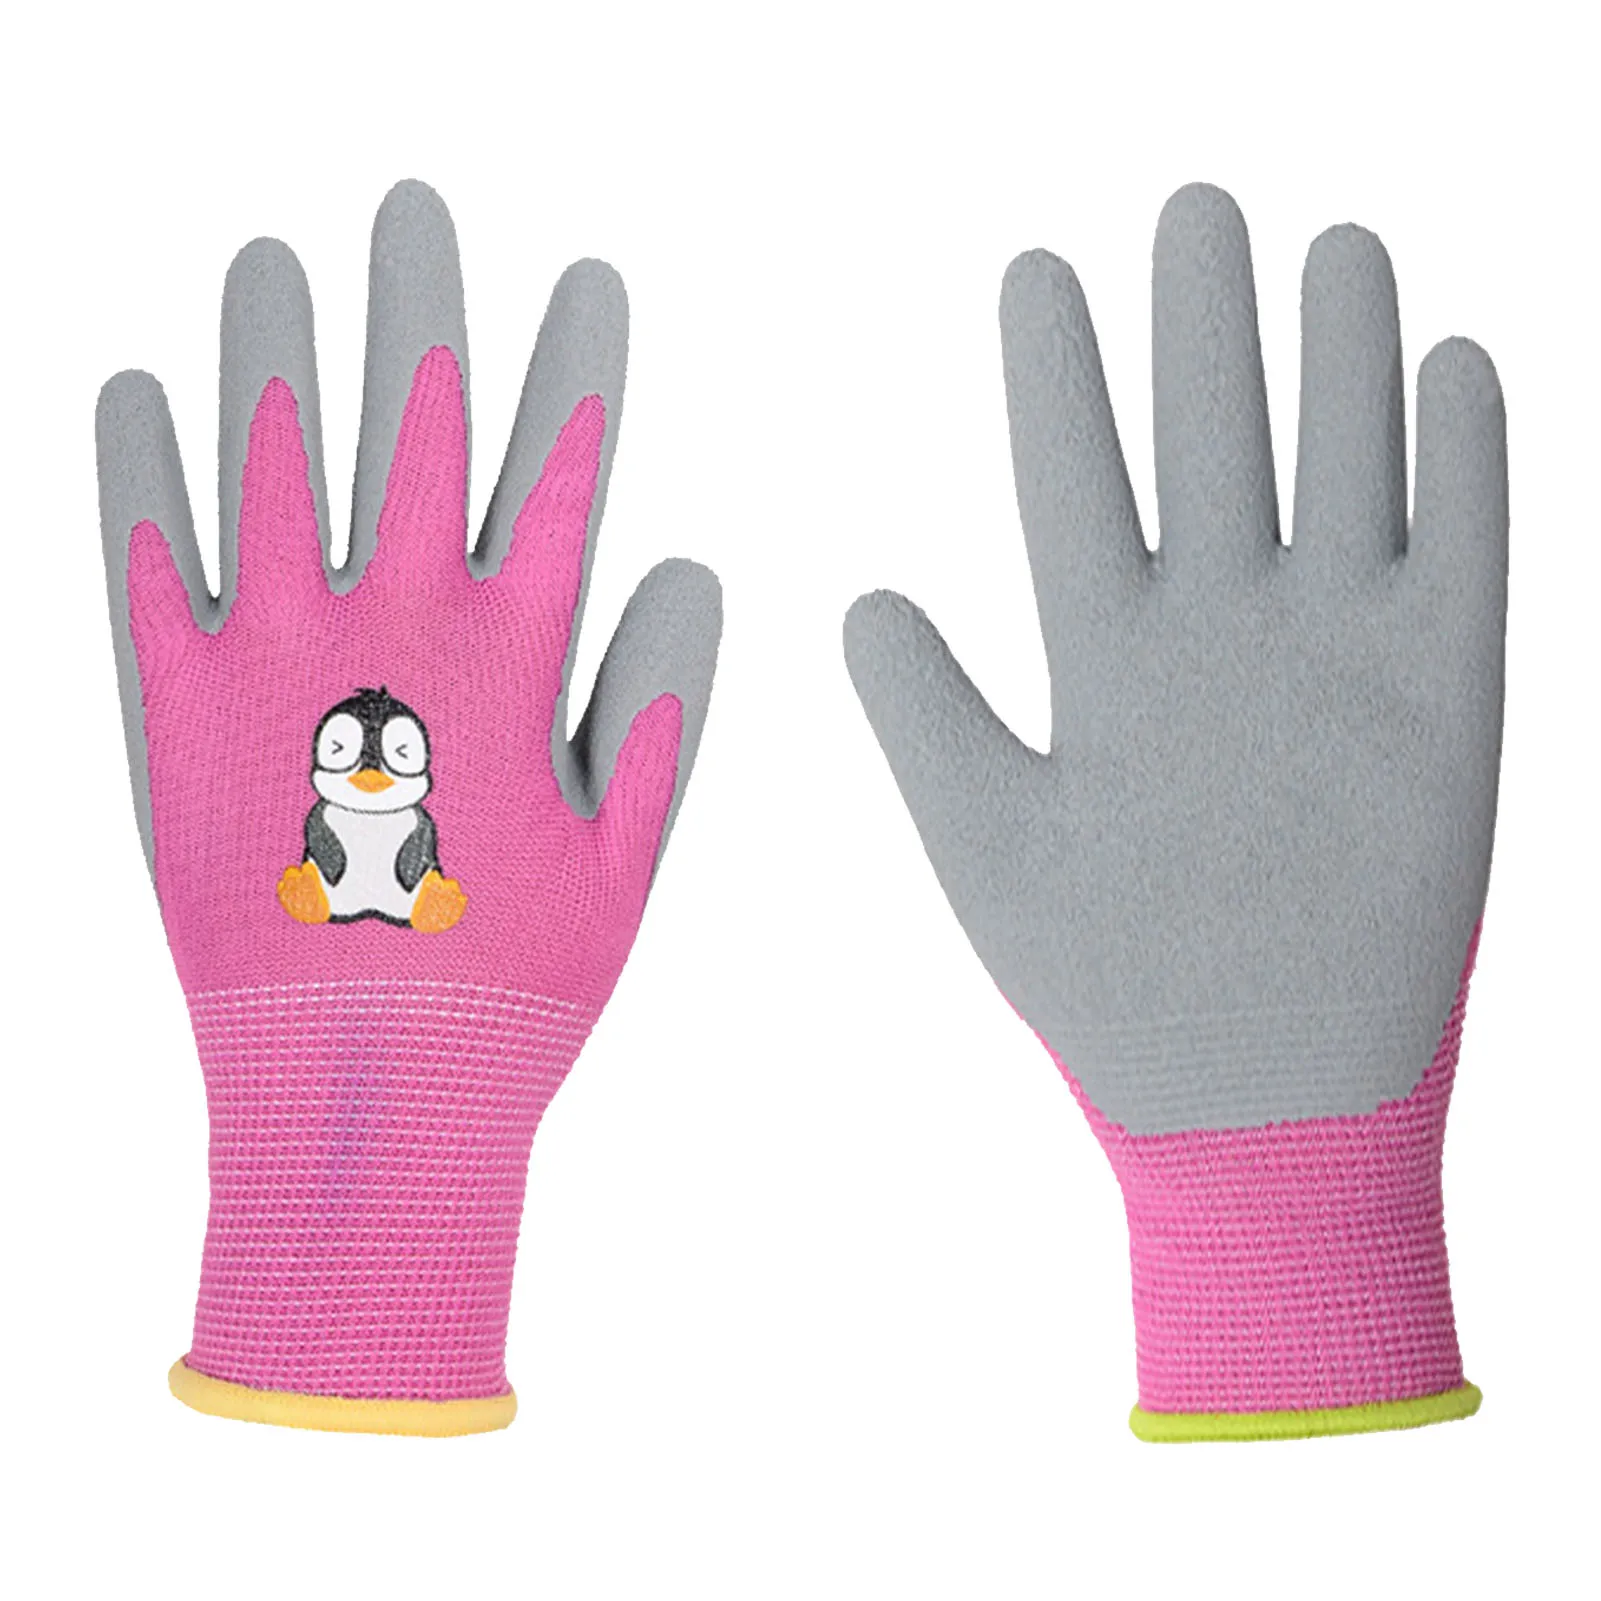 

Высокоэластичные рабочие перчатки с манжетами, мягкие детские перчатки с поролоновым резиновым покрытием для посадки, легкие, приятные для кожи, удобные, износостойкие